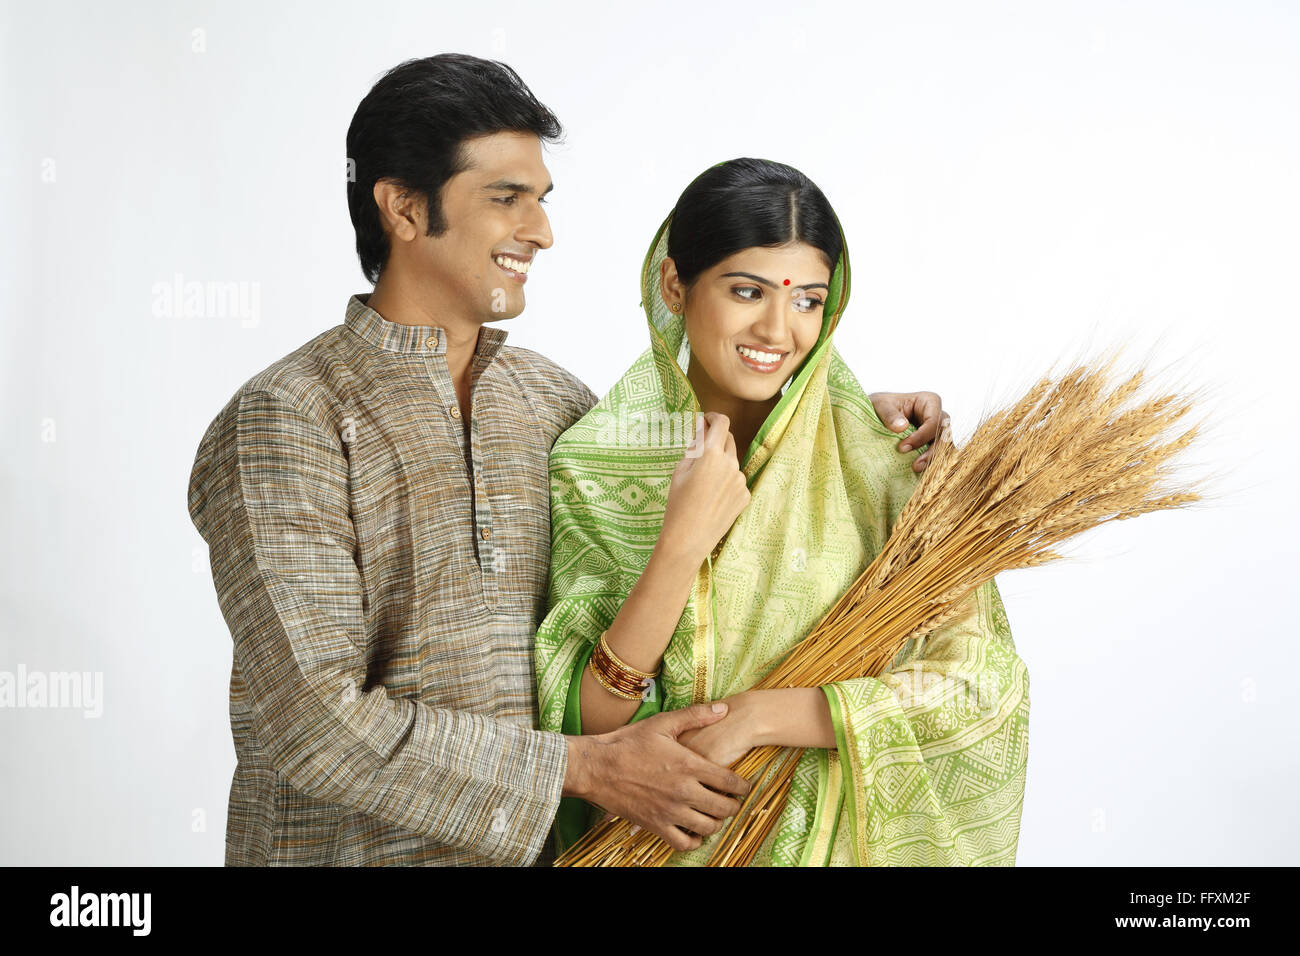 El agricultor indio mirando esposa celebración recolectado la cosecha de trigo de oro - MR#743A, 743B Foto de stock